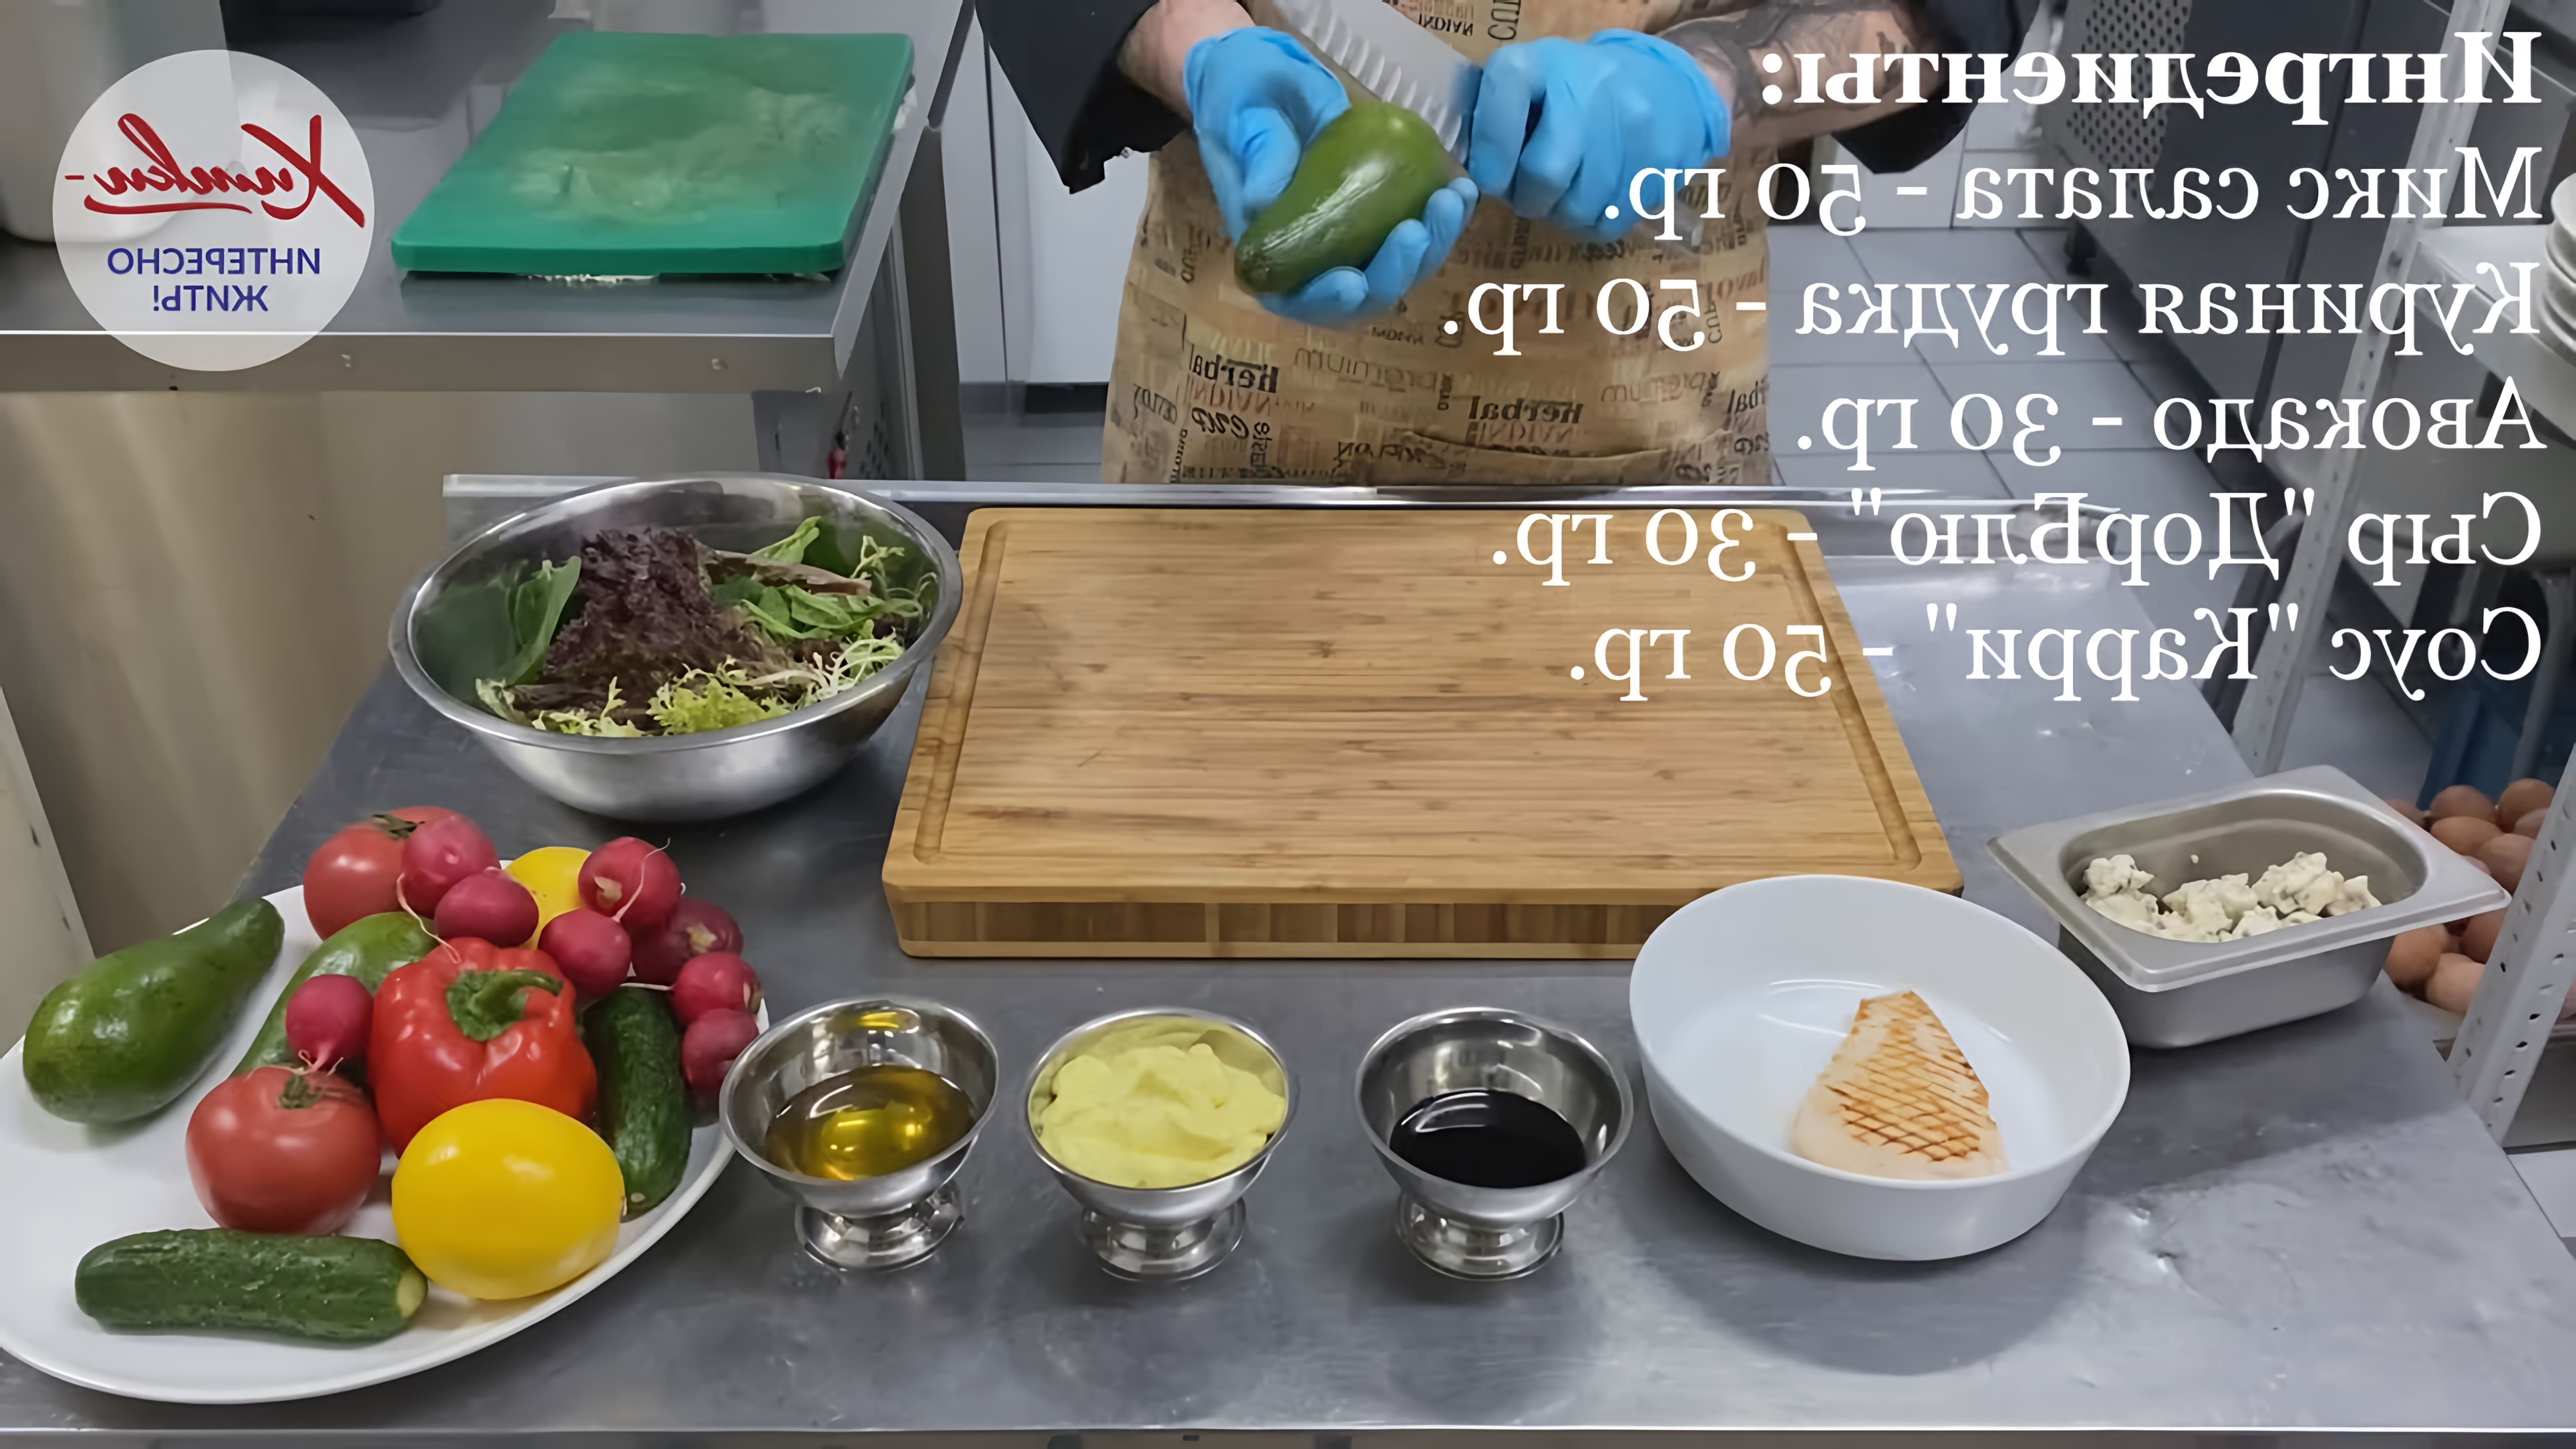 В этом видео Калашников Максим, шеф-повар ресторана "Сказка", демонстрирует процесс приготовления салата с авокадо и куриной грудкой